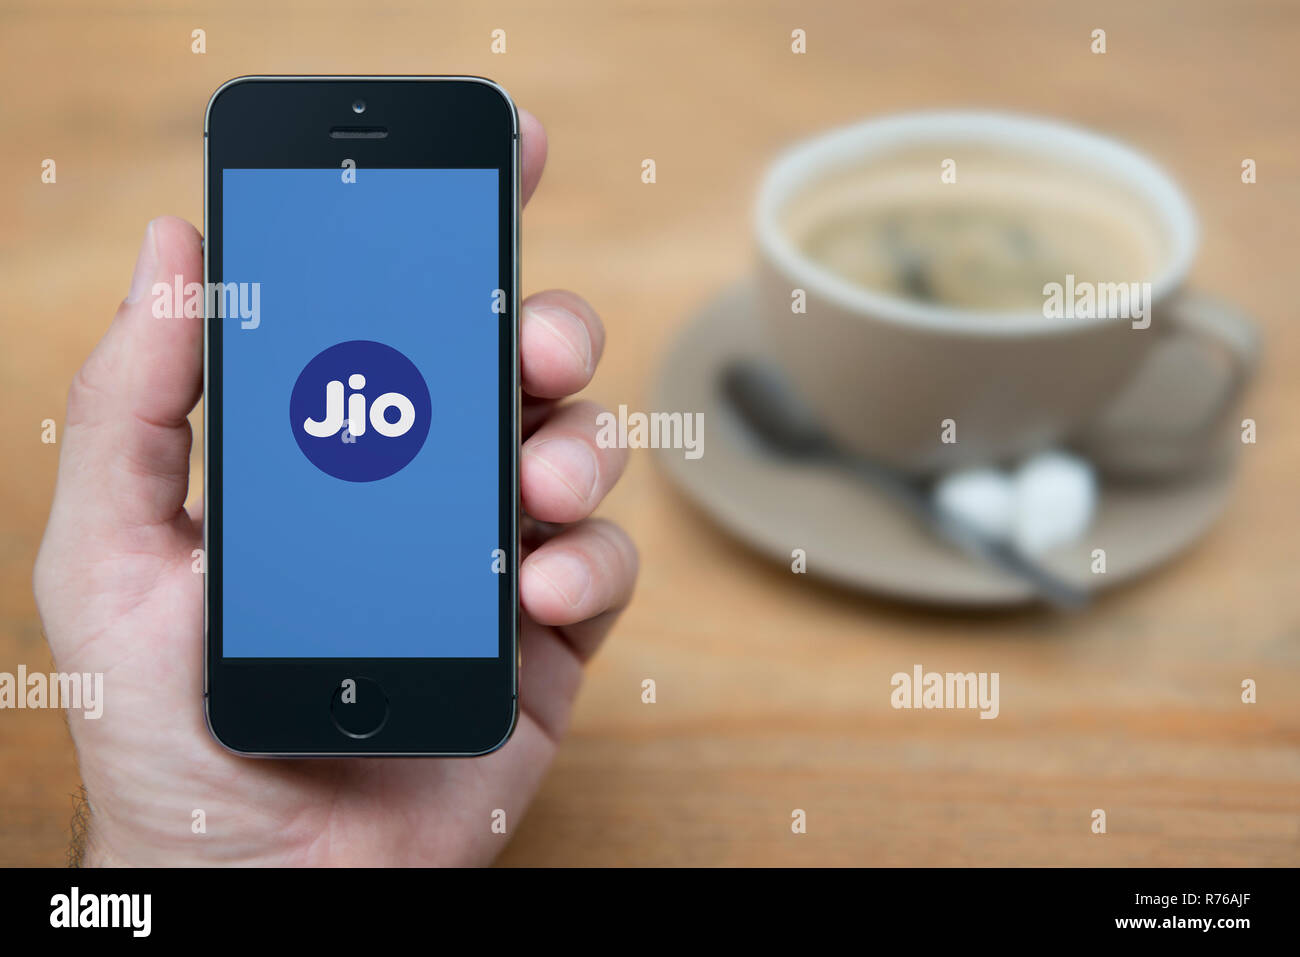 Ein Mann schaut auf seinem iPhone zeigt die Abhängigkeit Jio Logo (nur redaktionelle Nutzung). Stockfoto